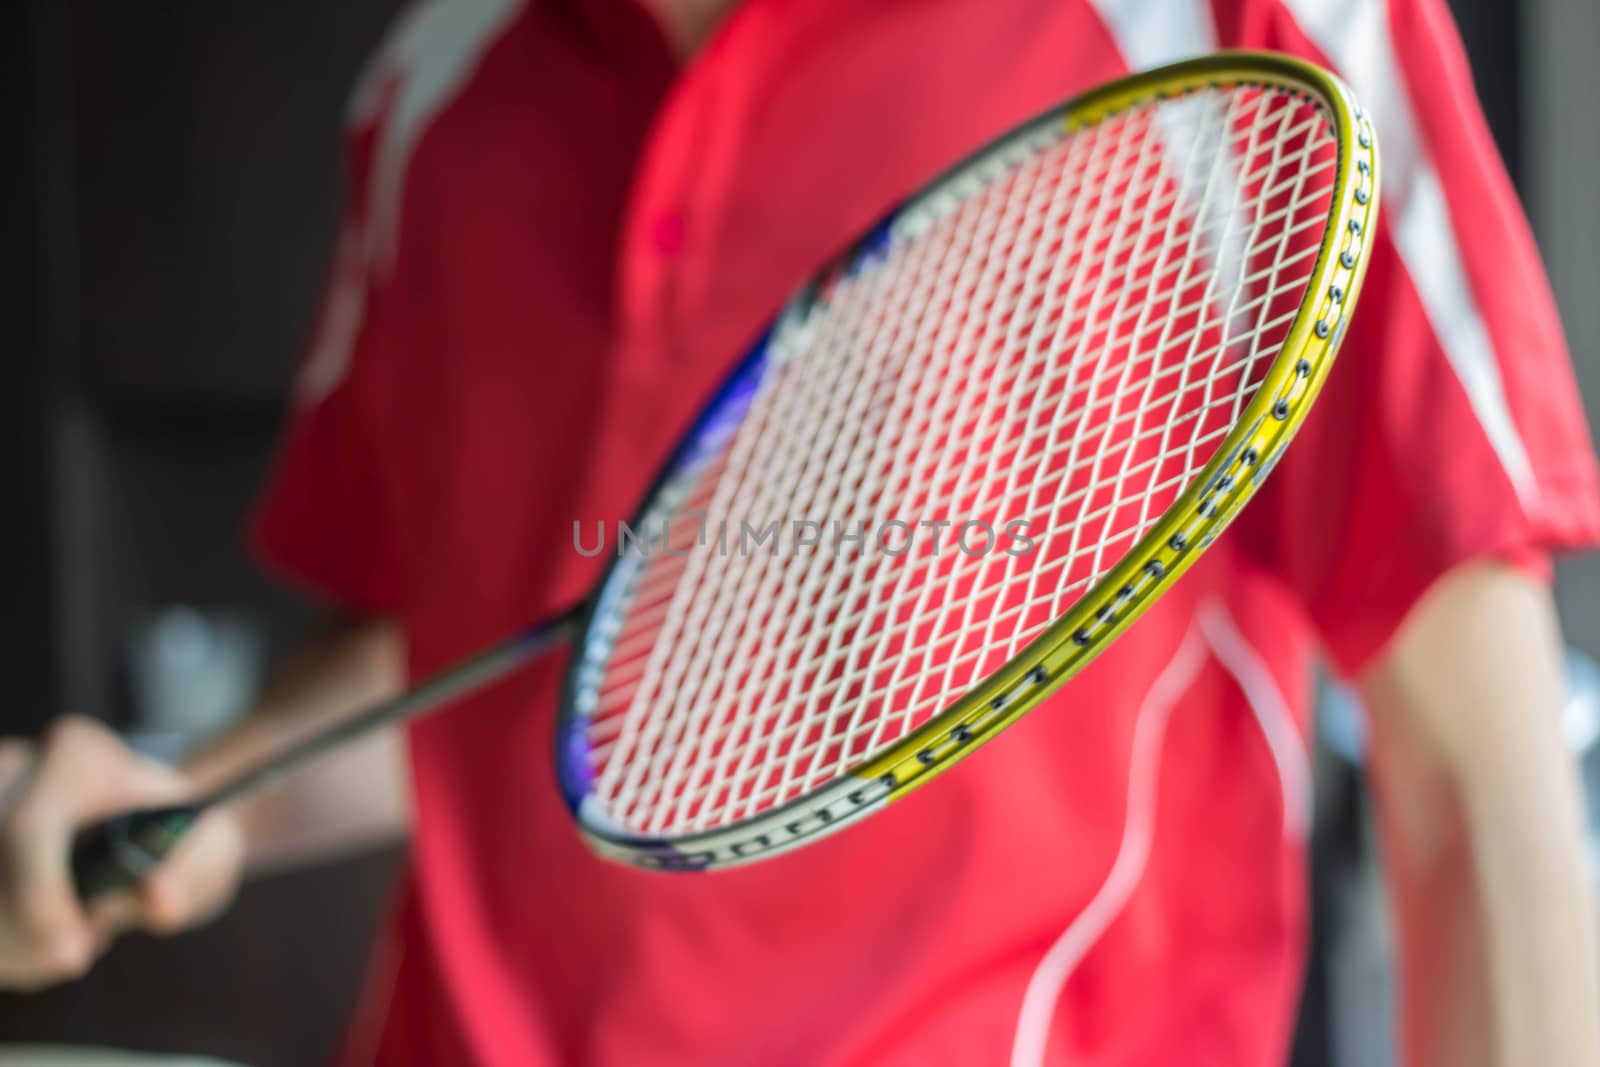 Badminton Racket by ttt1341